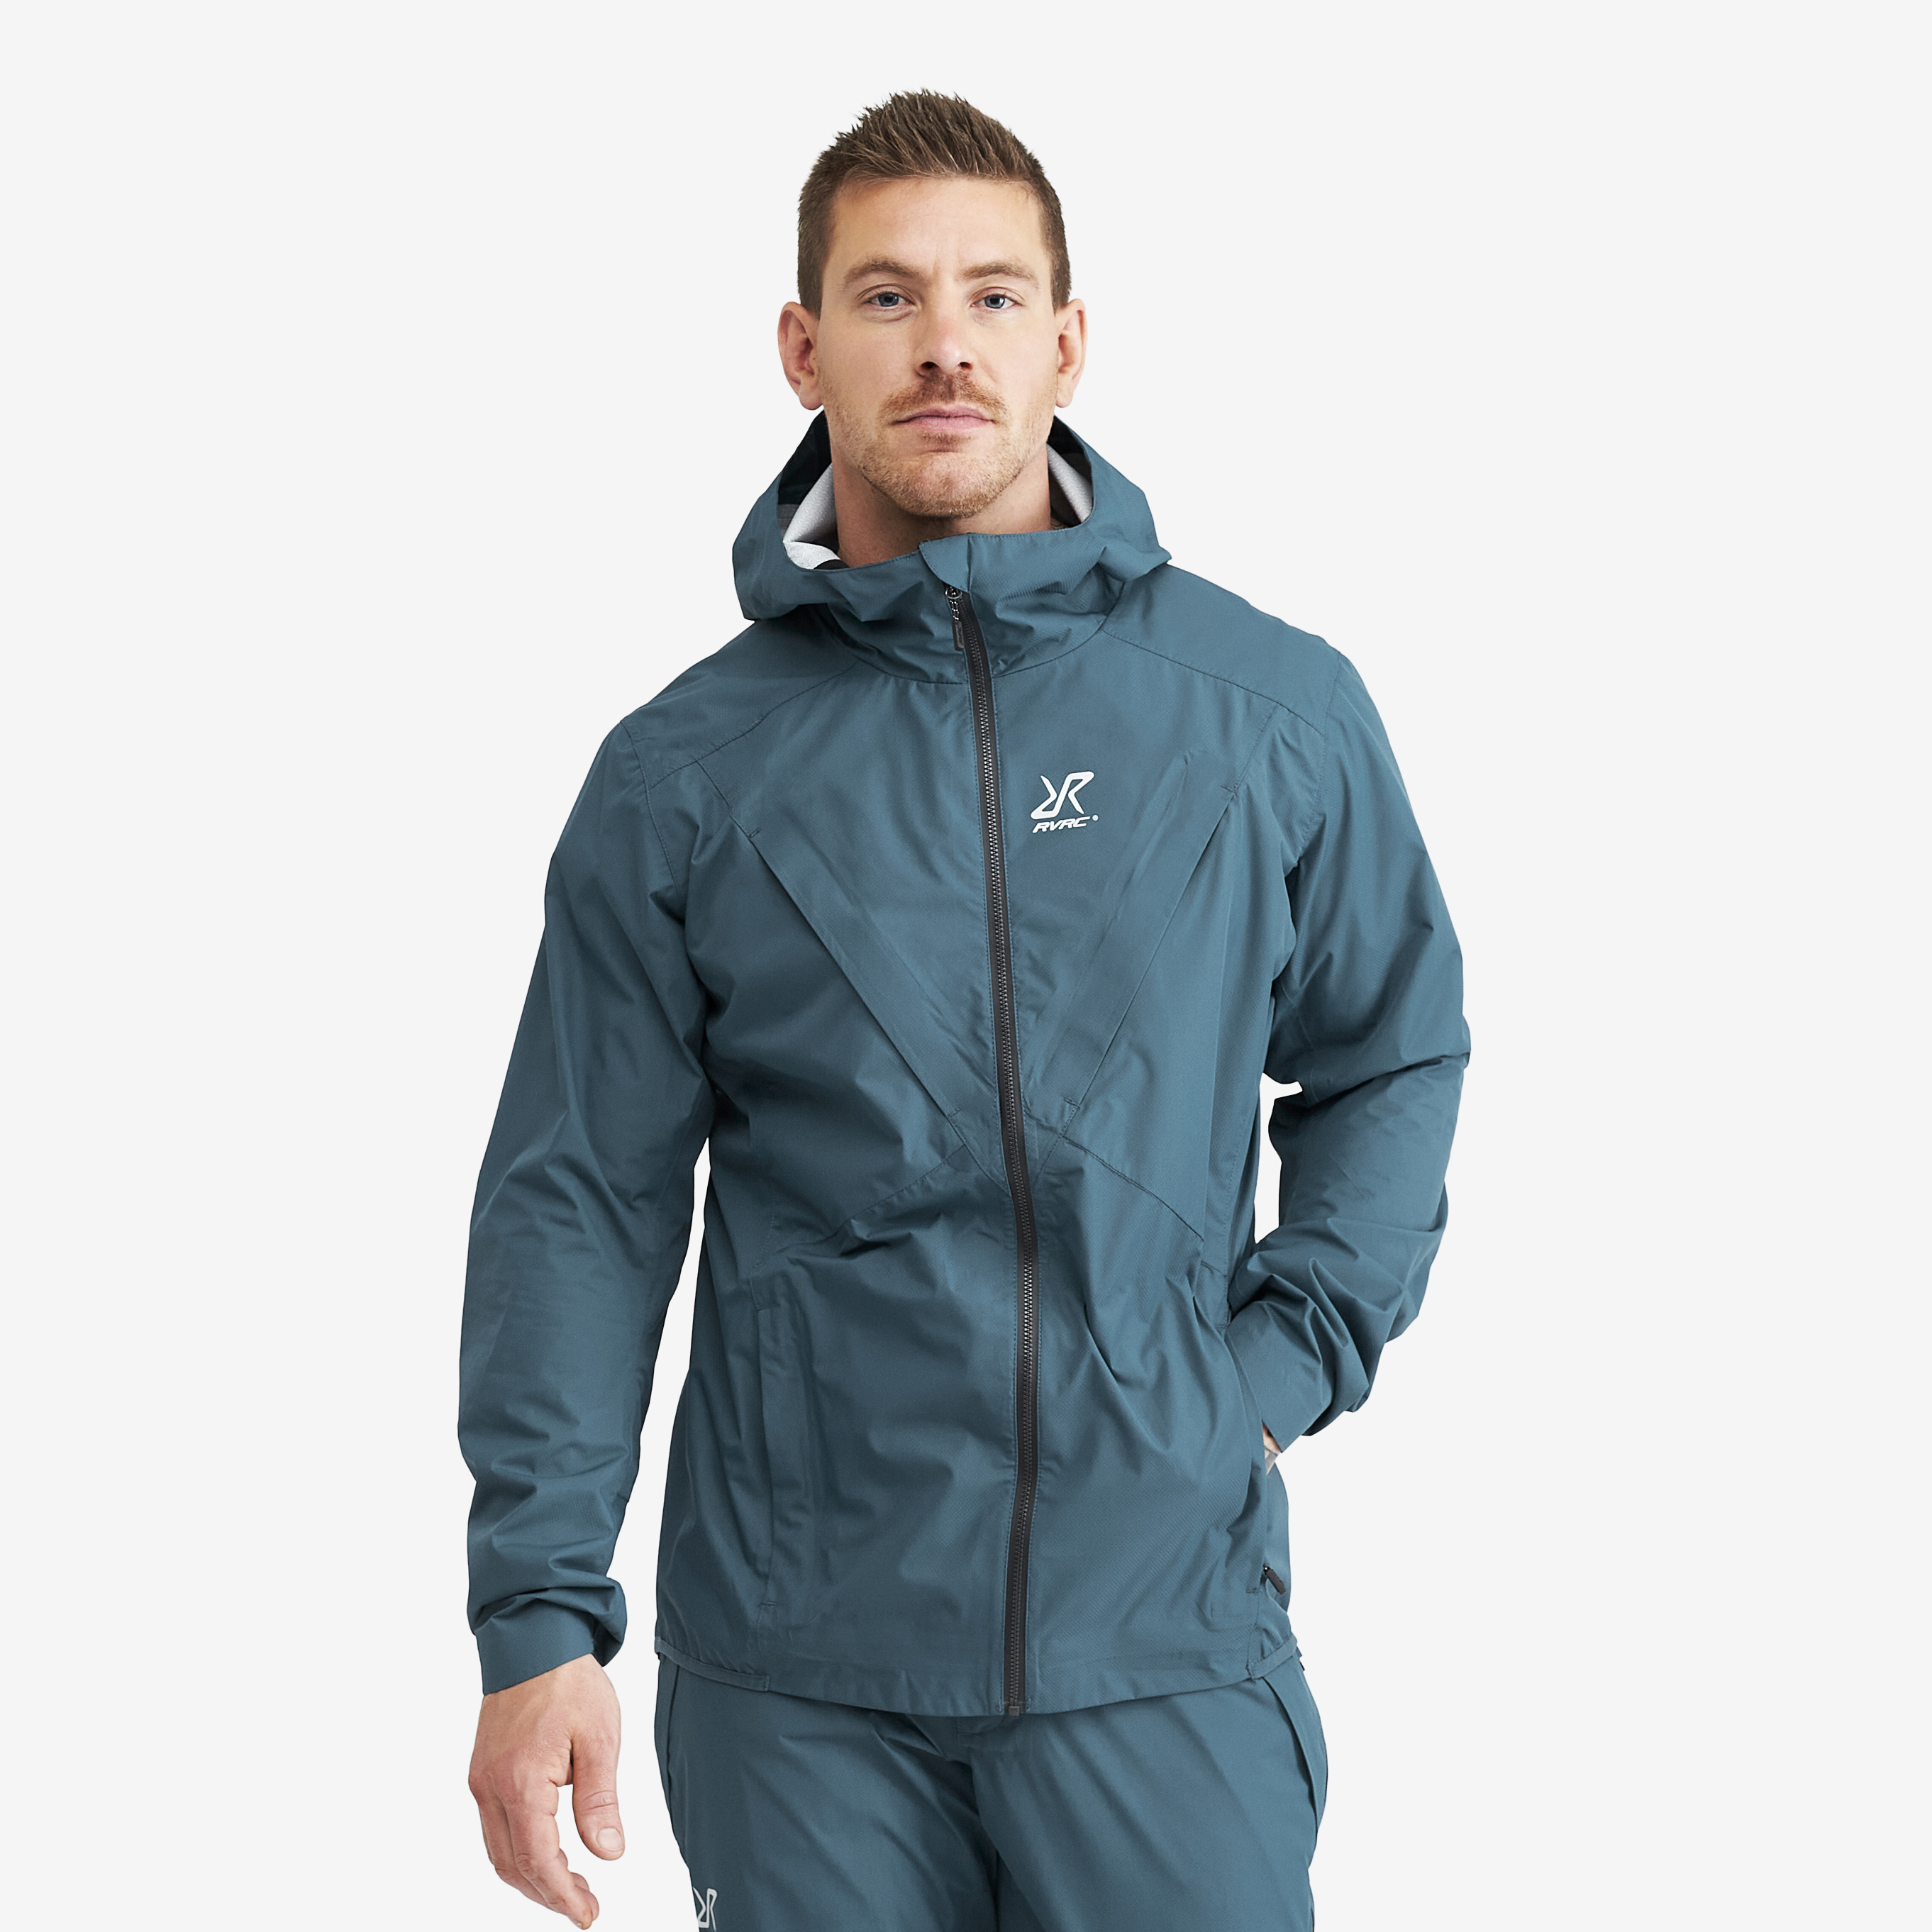 Typhoon waterproof jacket for men in blue